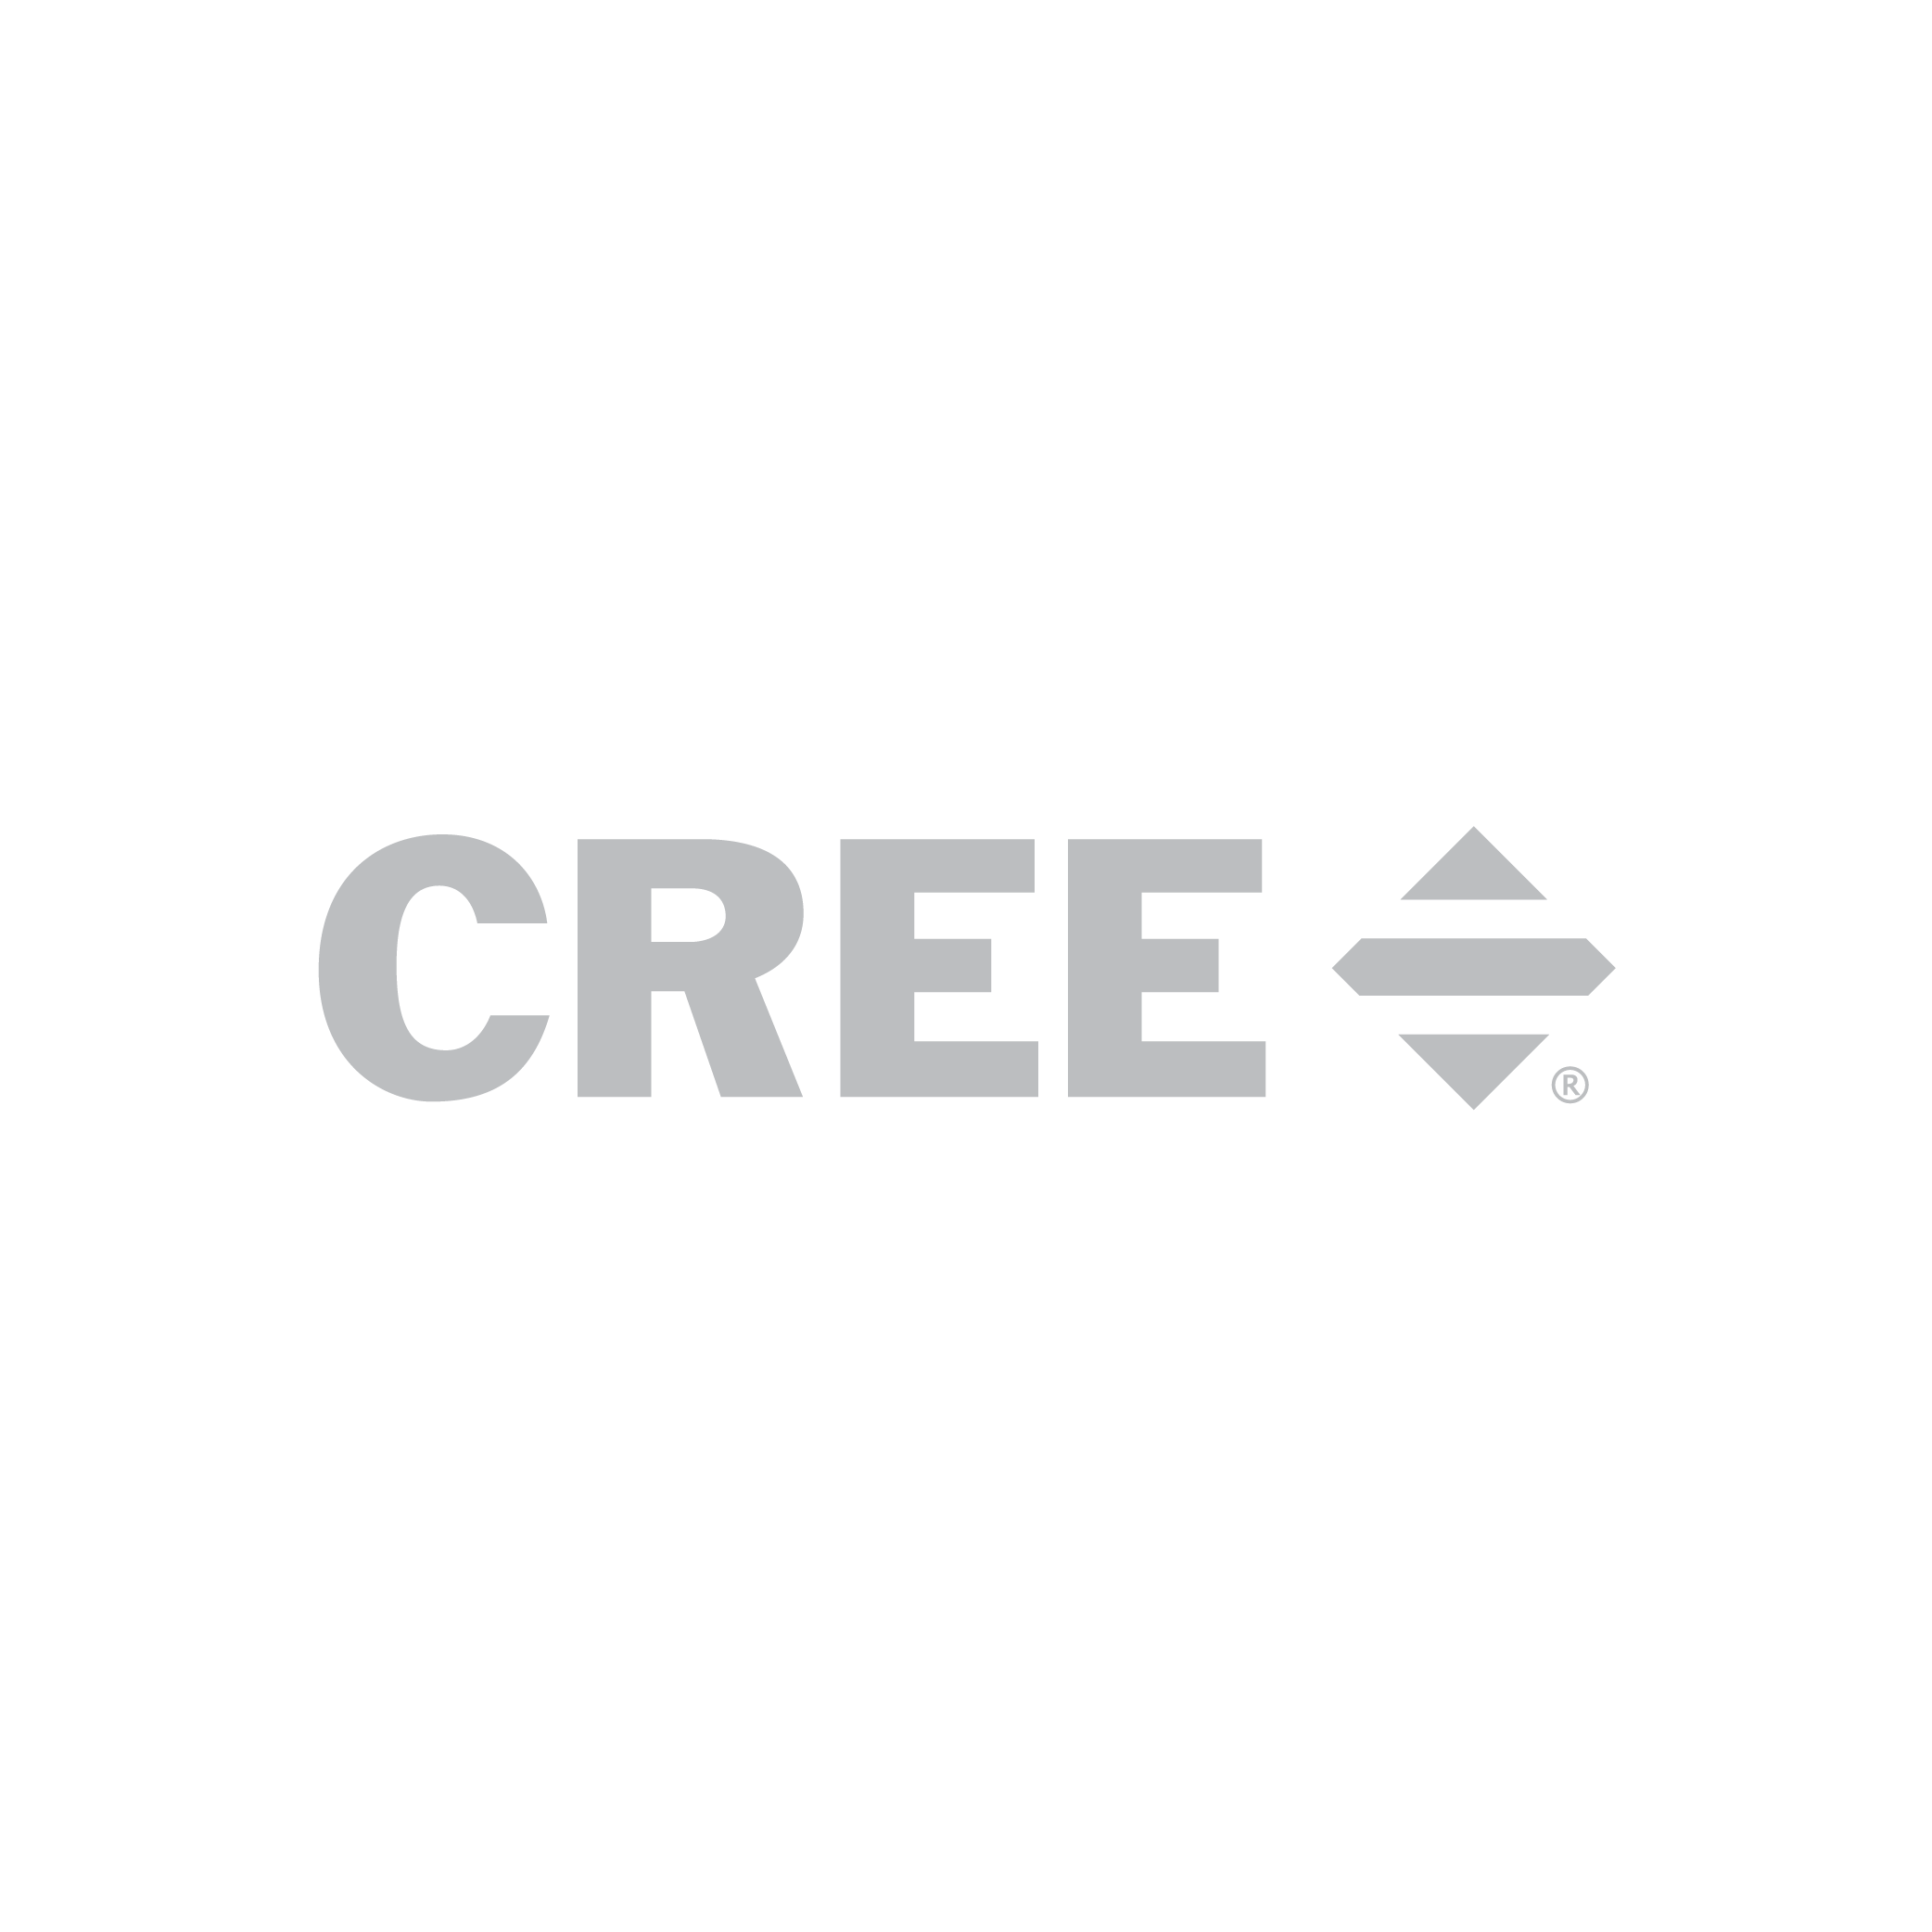 cree_gray-01.png